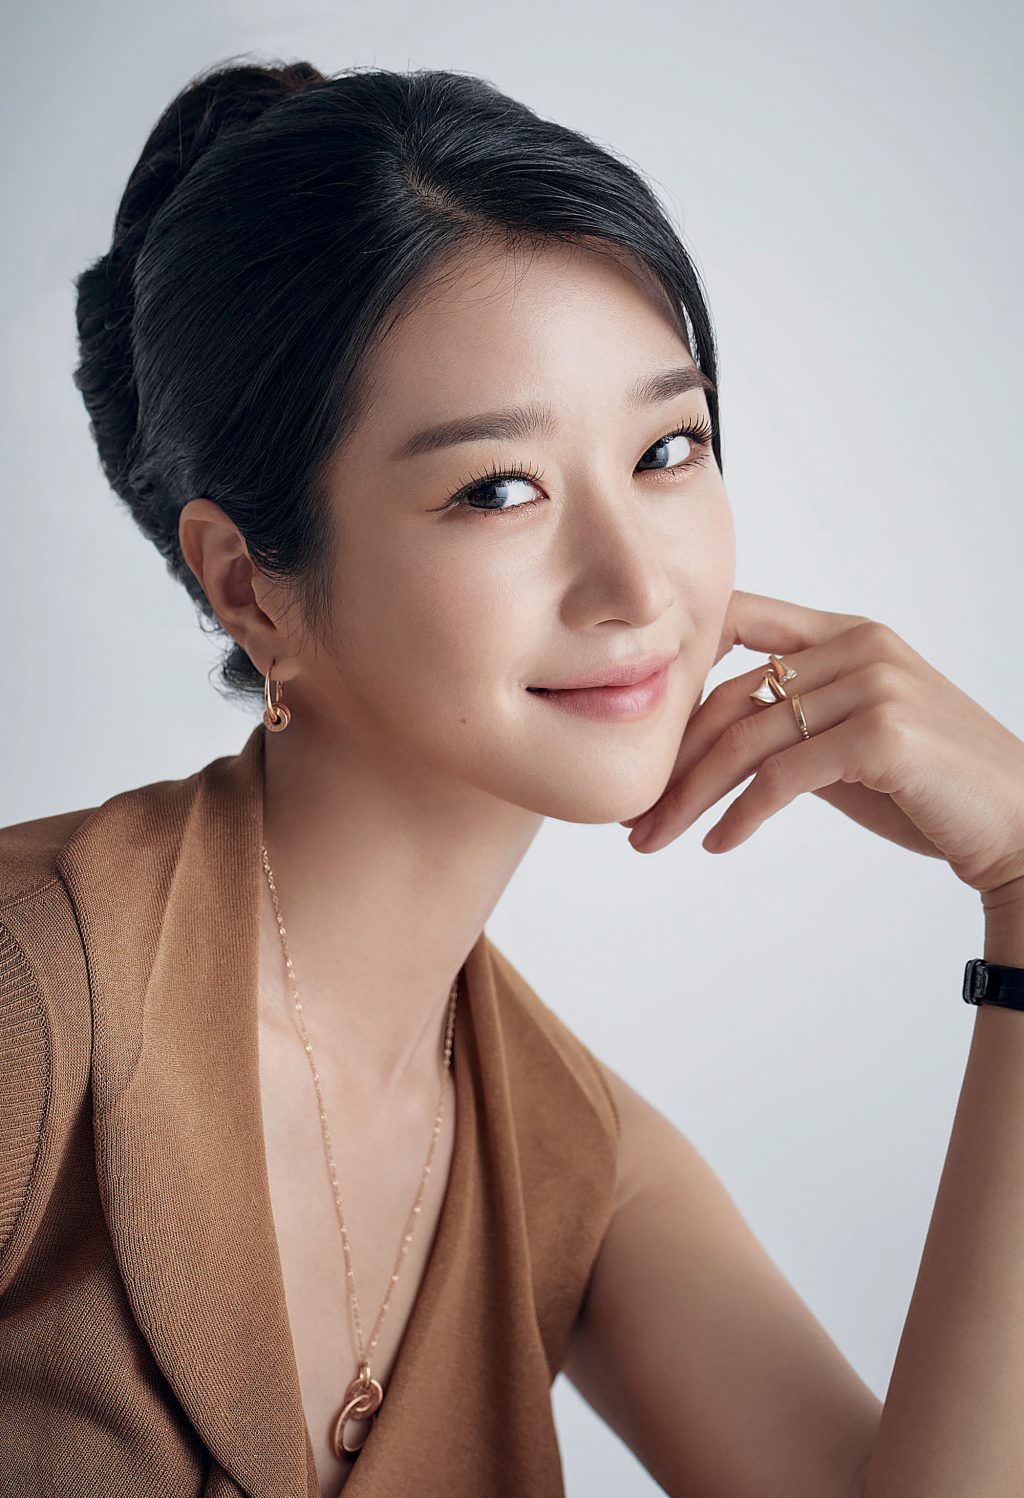 Mỹ nhân “Thiên Nga Bóng Đêm” Seo Ye Ji: Sở hữu vẻ đẹp sắc sảo ở tuổi U30, từng khiến showbiz Hàn xôn xao với ồn ào cùng bạn trai cũ - Ảnh 5.